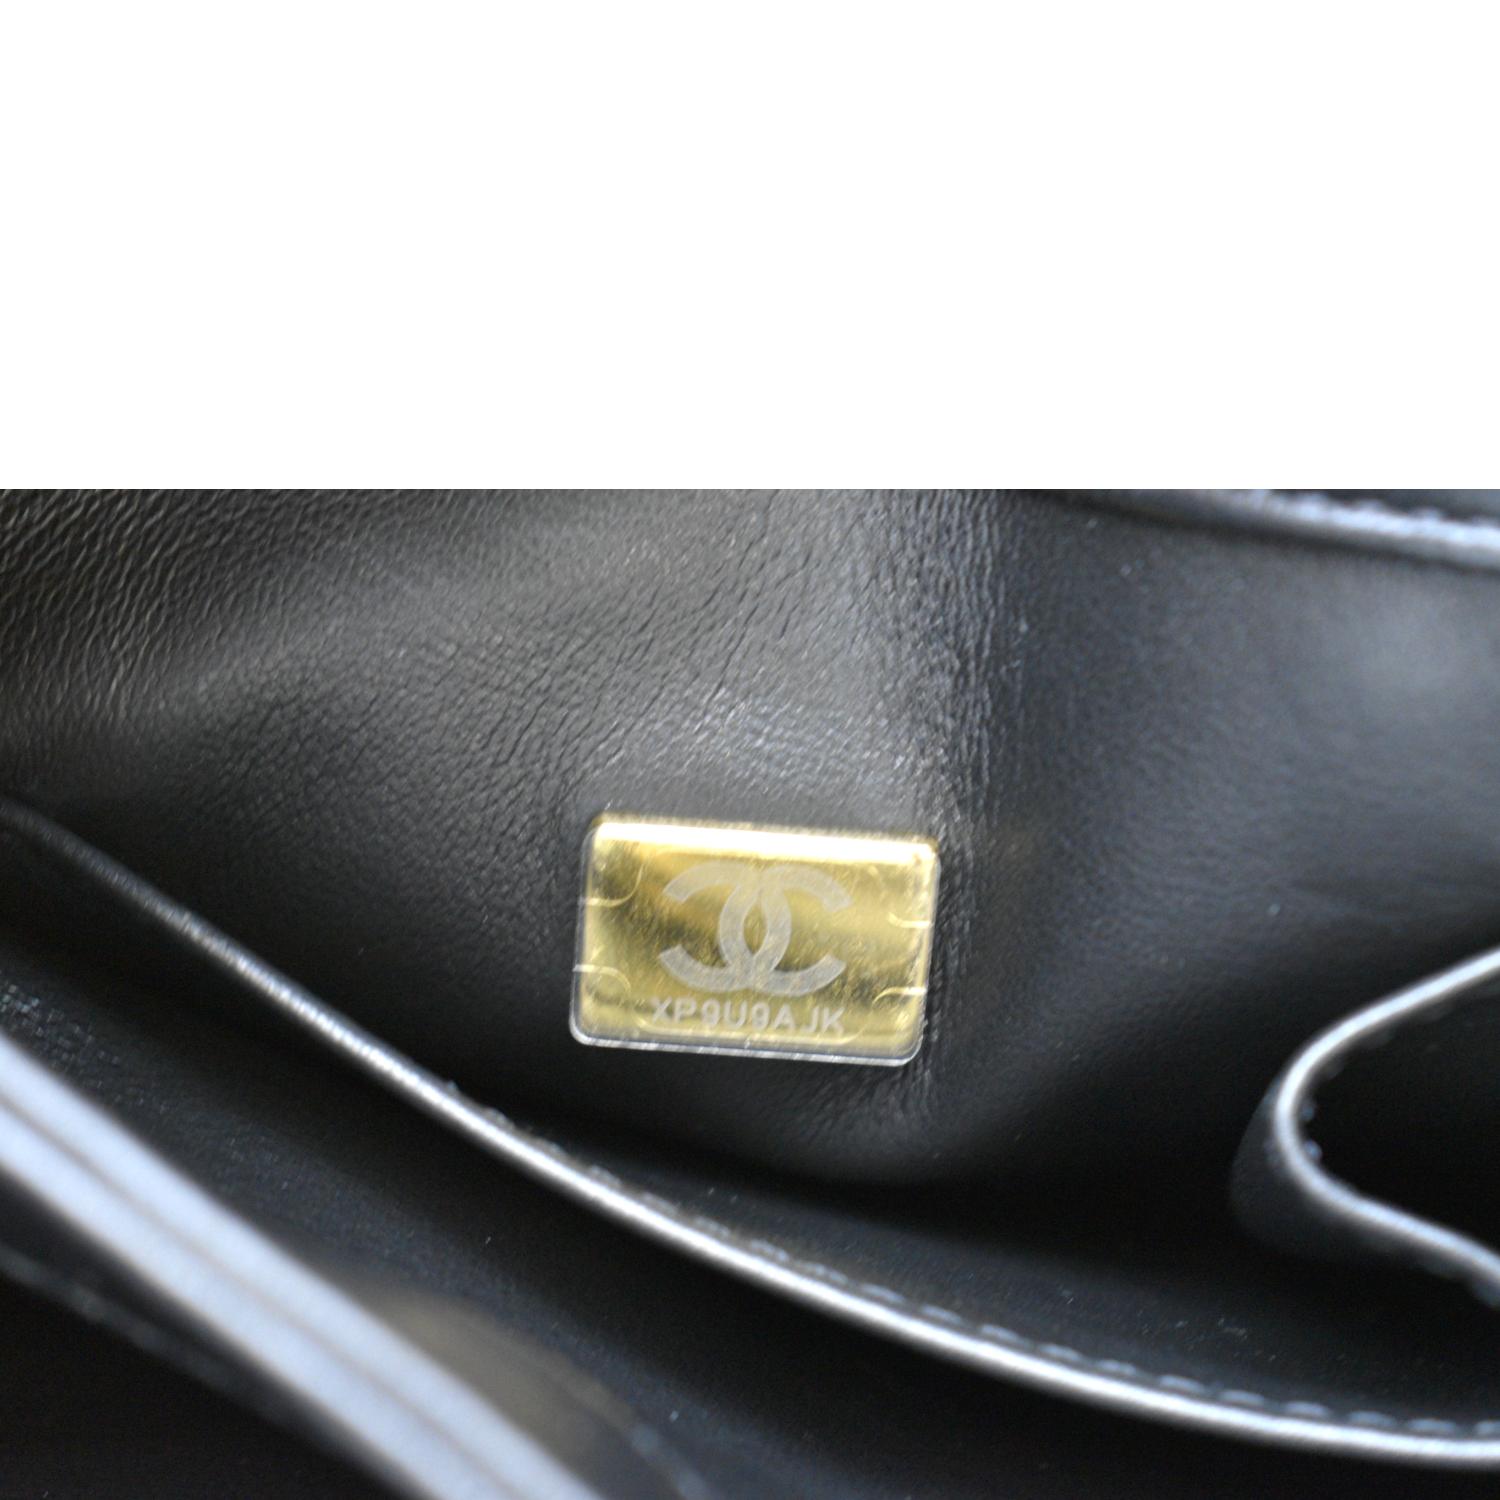 Used Black Chanel Vintage Black Beige Leather Jacket Shoulder Bag Limited  Edition Houston,TX